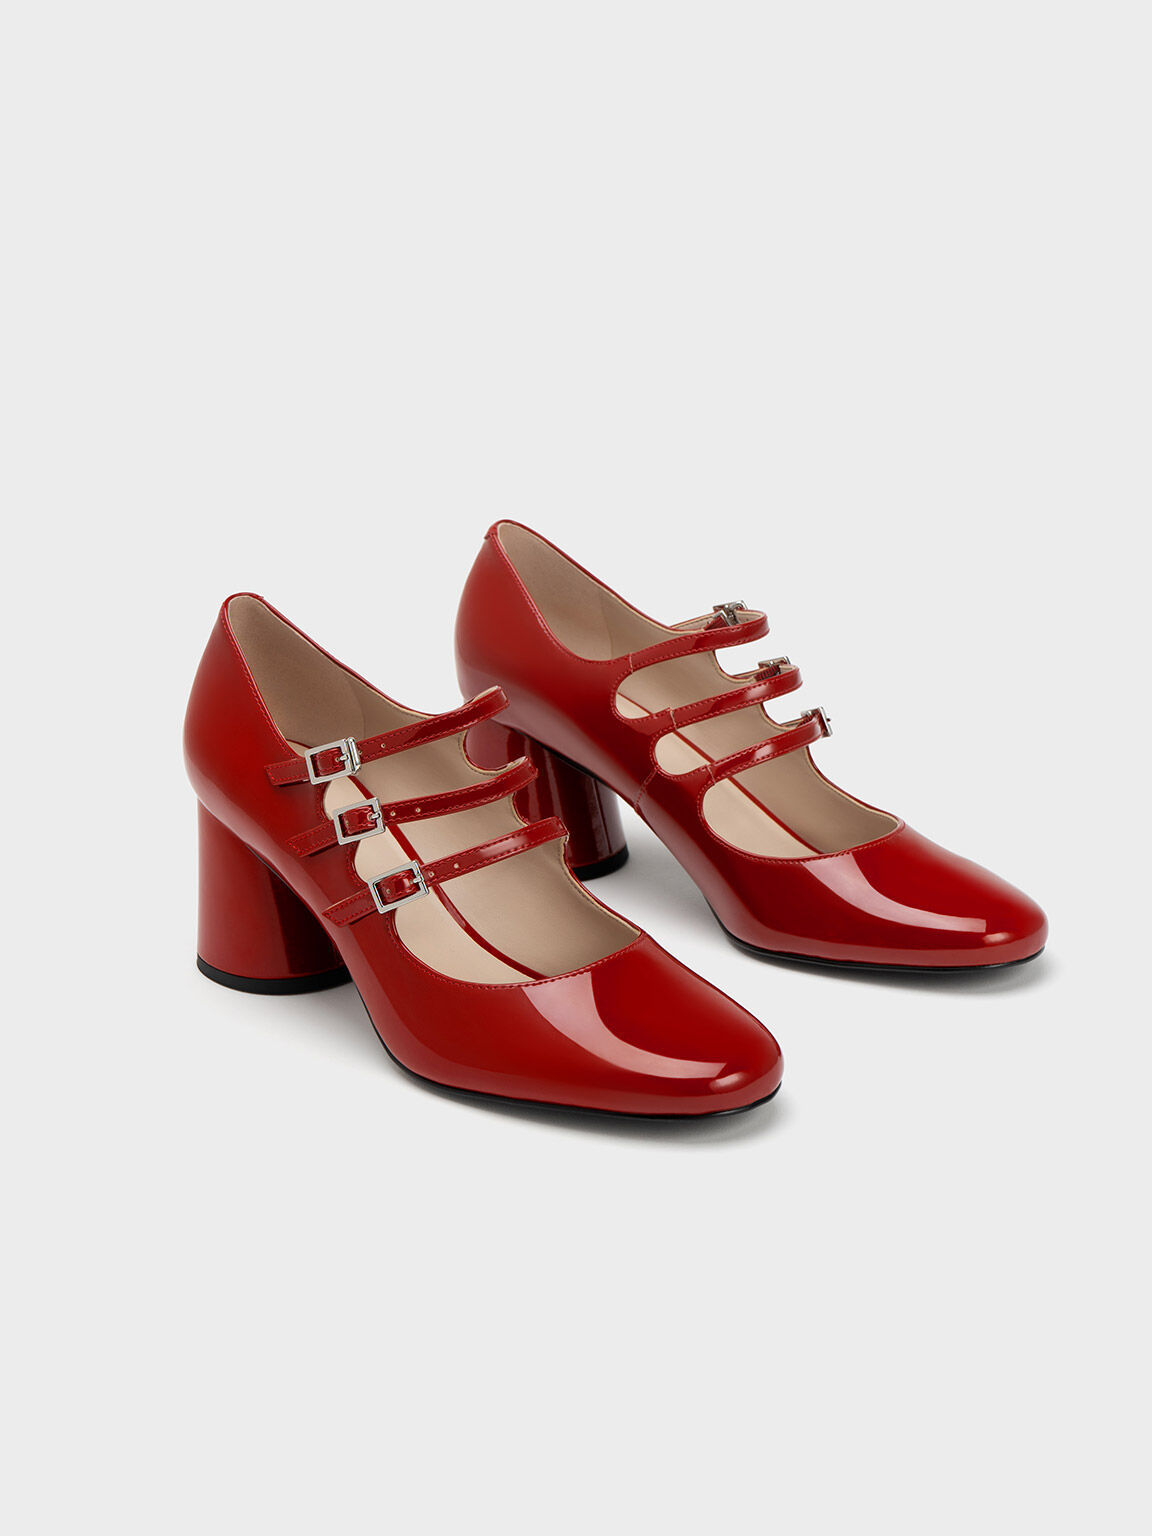 Compra Tus Zapatos Mary Jane Fly London Al Mejor Precio - Flies Mujer Rojas